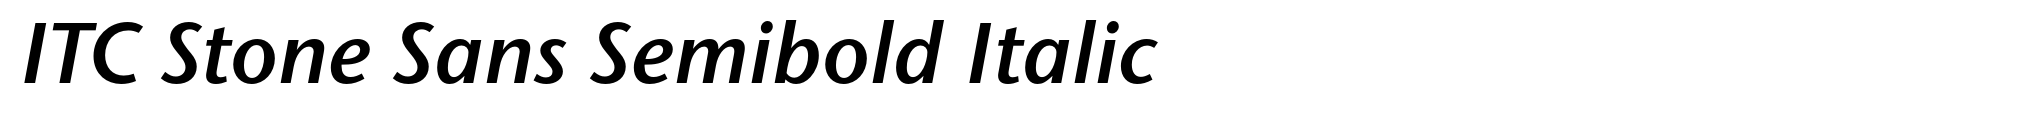 ITC Stone Sans Semibold Italic image